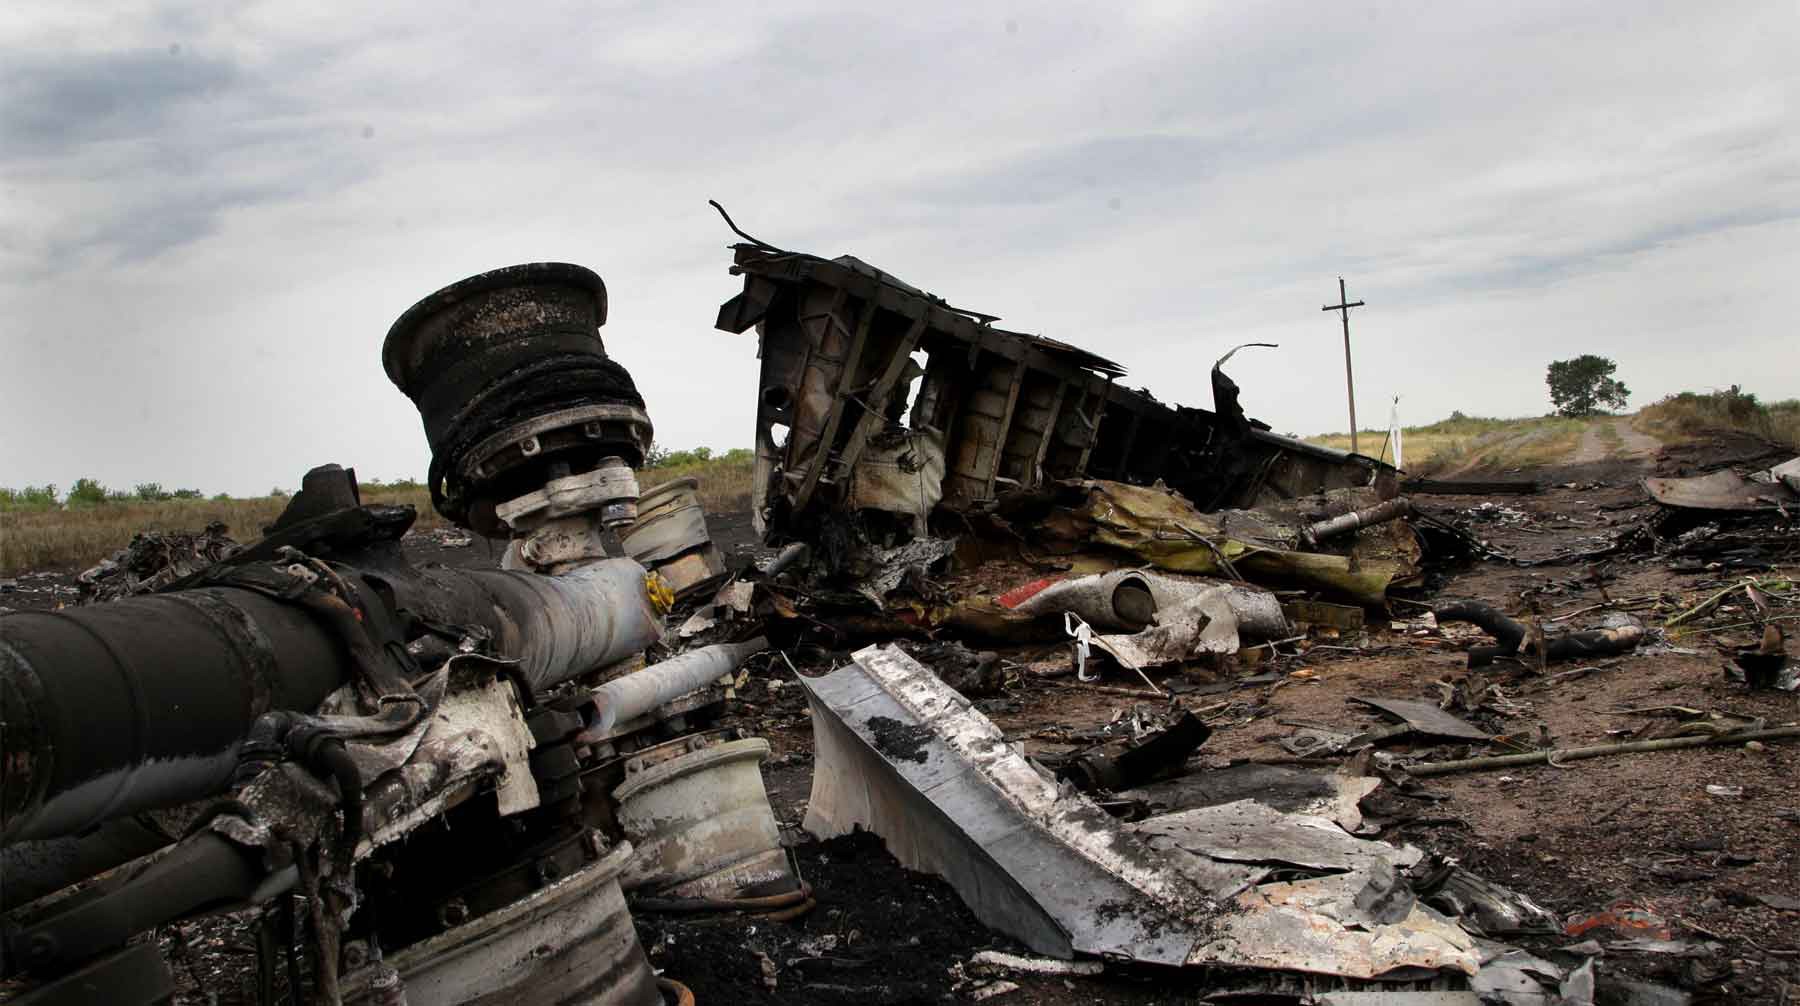 Dailystorm - Замглавы погранслужбы ФСБ назвали одним из фигурантов расследования о крушении MH17